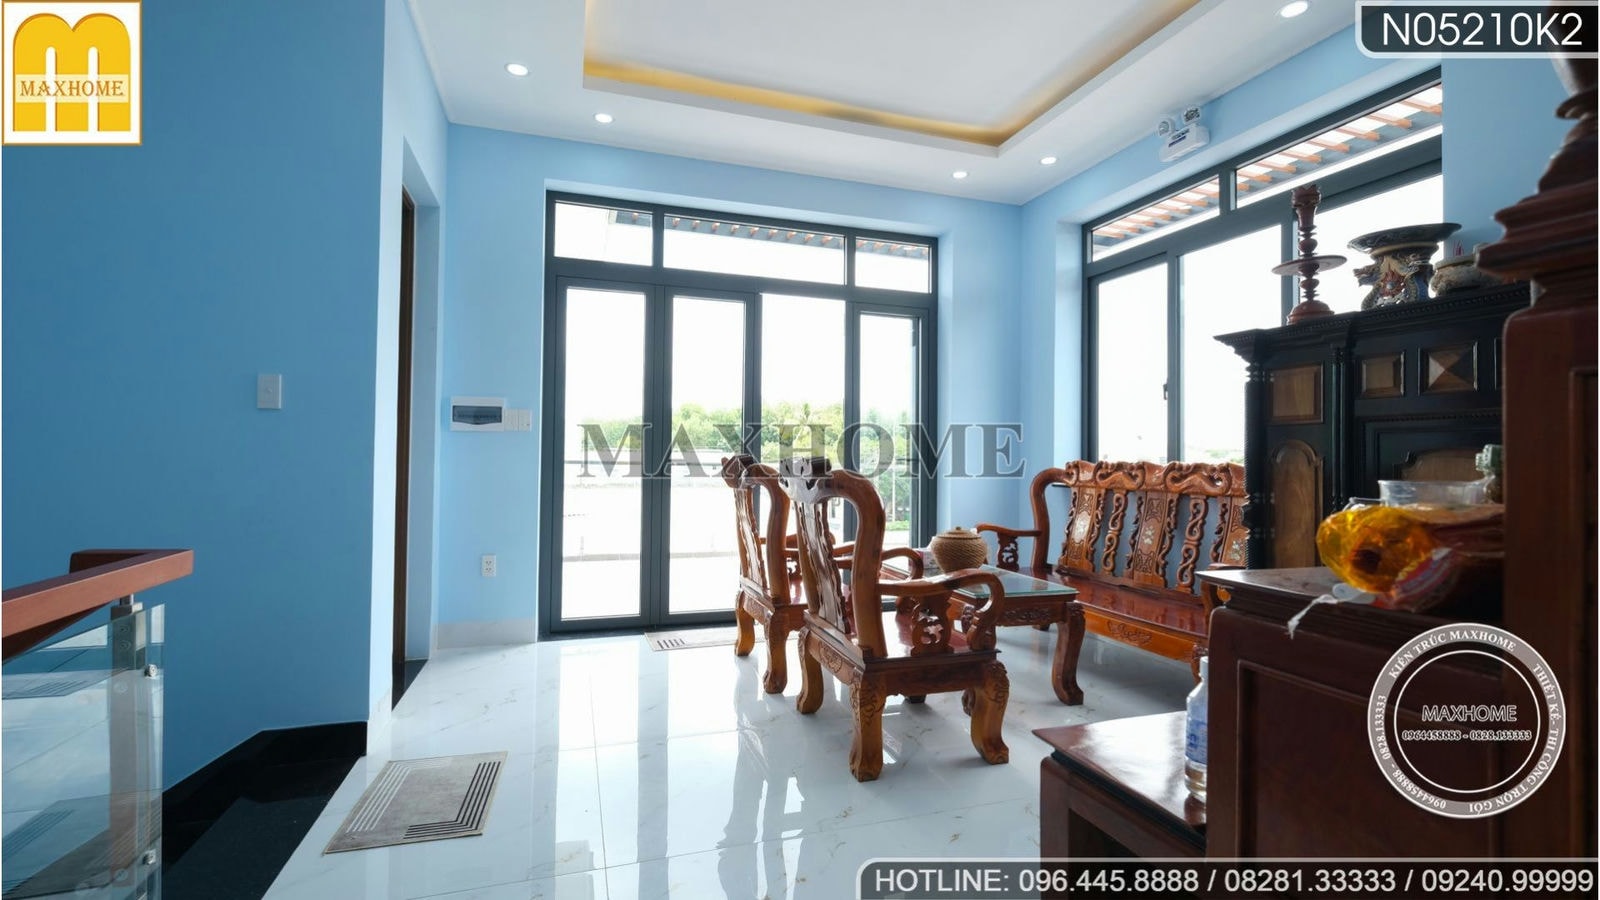 Tham quan nội thất ngôi nhà Hiện Đại đẹp từ ngoài vào trong tại Tây Ninh